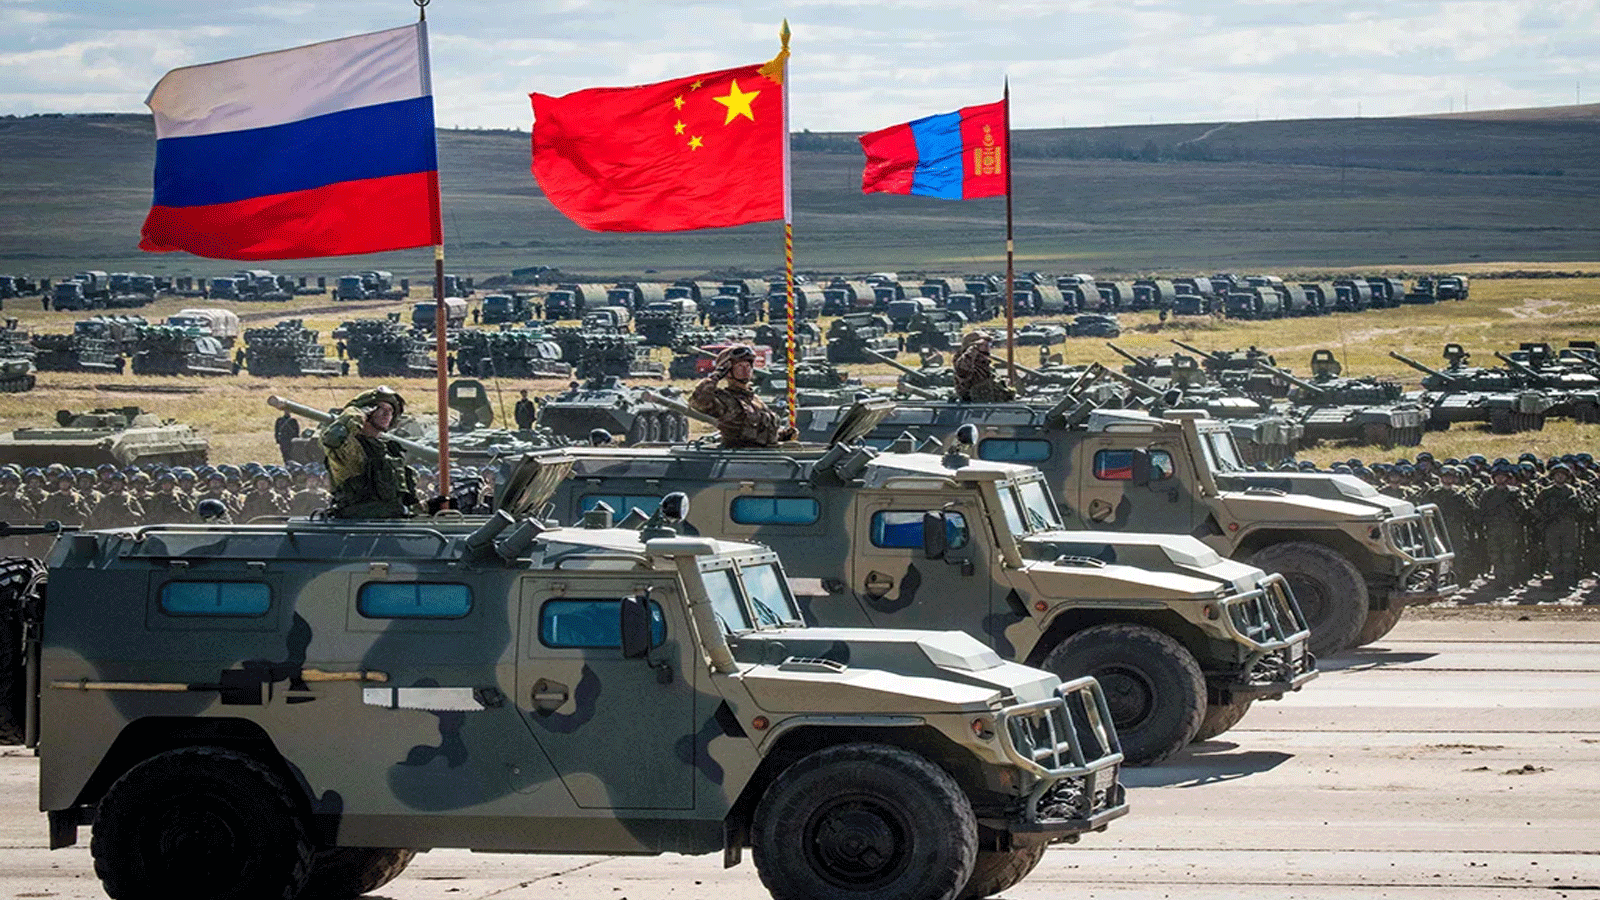 صورة أرشيفية من استعراض للقوات الروسية والصينية والمنغولية والمعدات العسكرية في نهاية فوستوك عام 2018